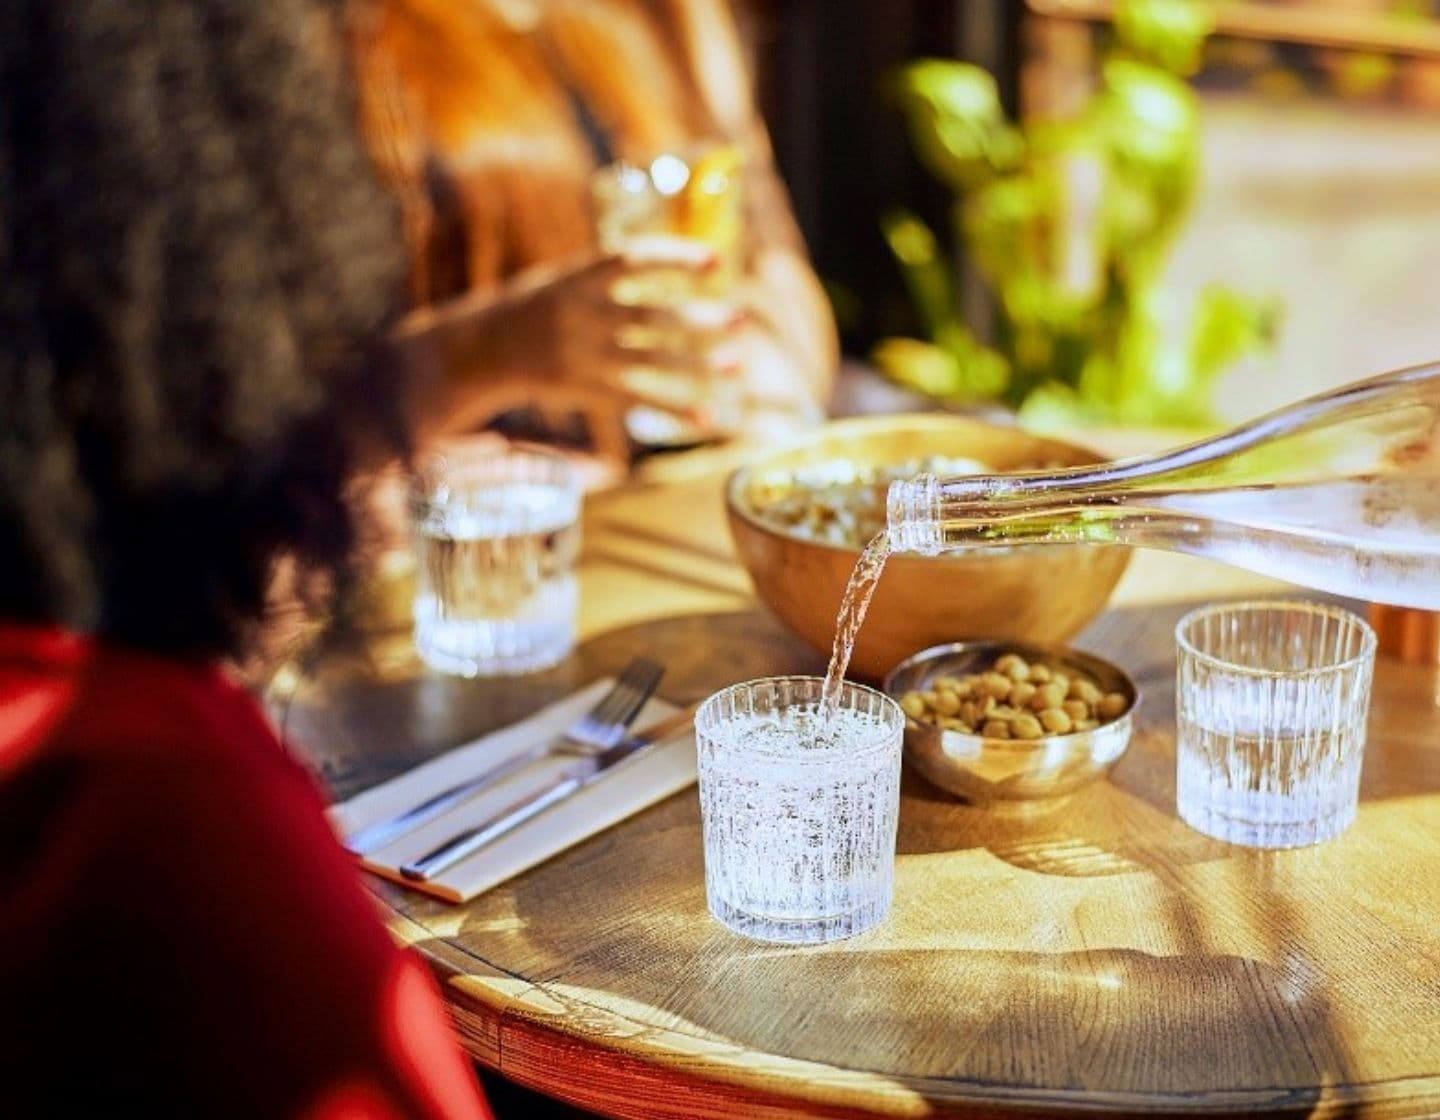 Bebida sendo servida em um copo transparente com comida e pequenos pratos na mesa